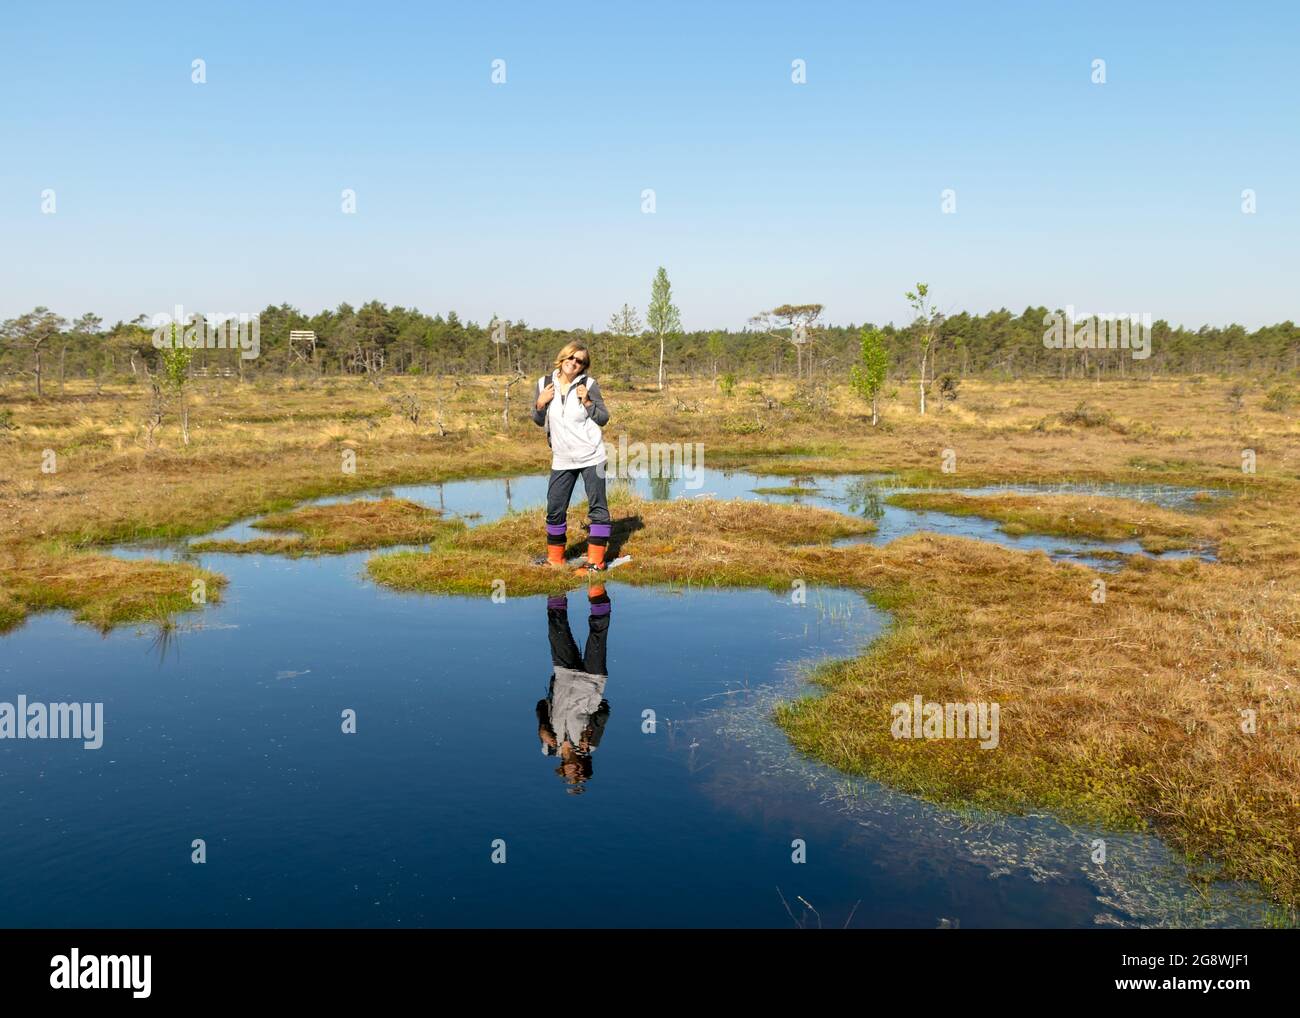 Schöne Sumpflandschaft mit blauem Himmel und Wasser, Frau genießt Sumpflandschaft, Wanderung mit Schneeschuhen im Sumpf, traditionelle Sumpfpflanzen, Moose und tr Stockfoto